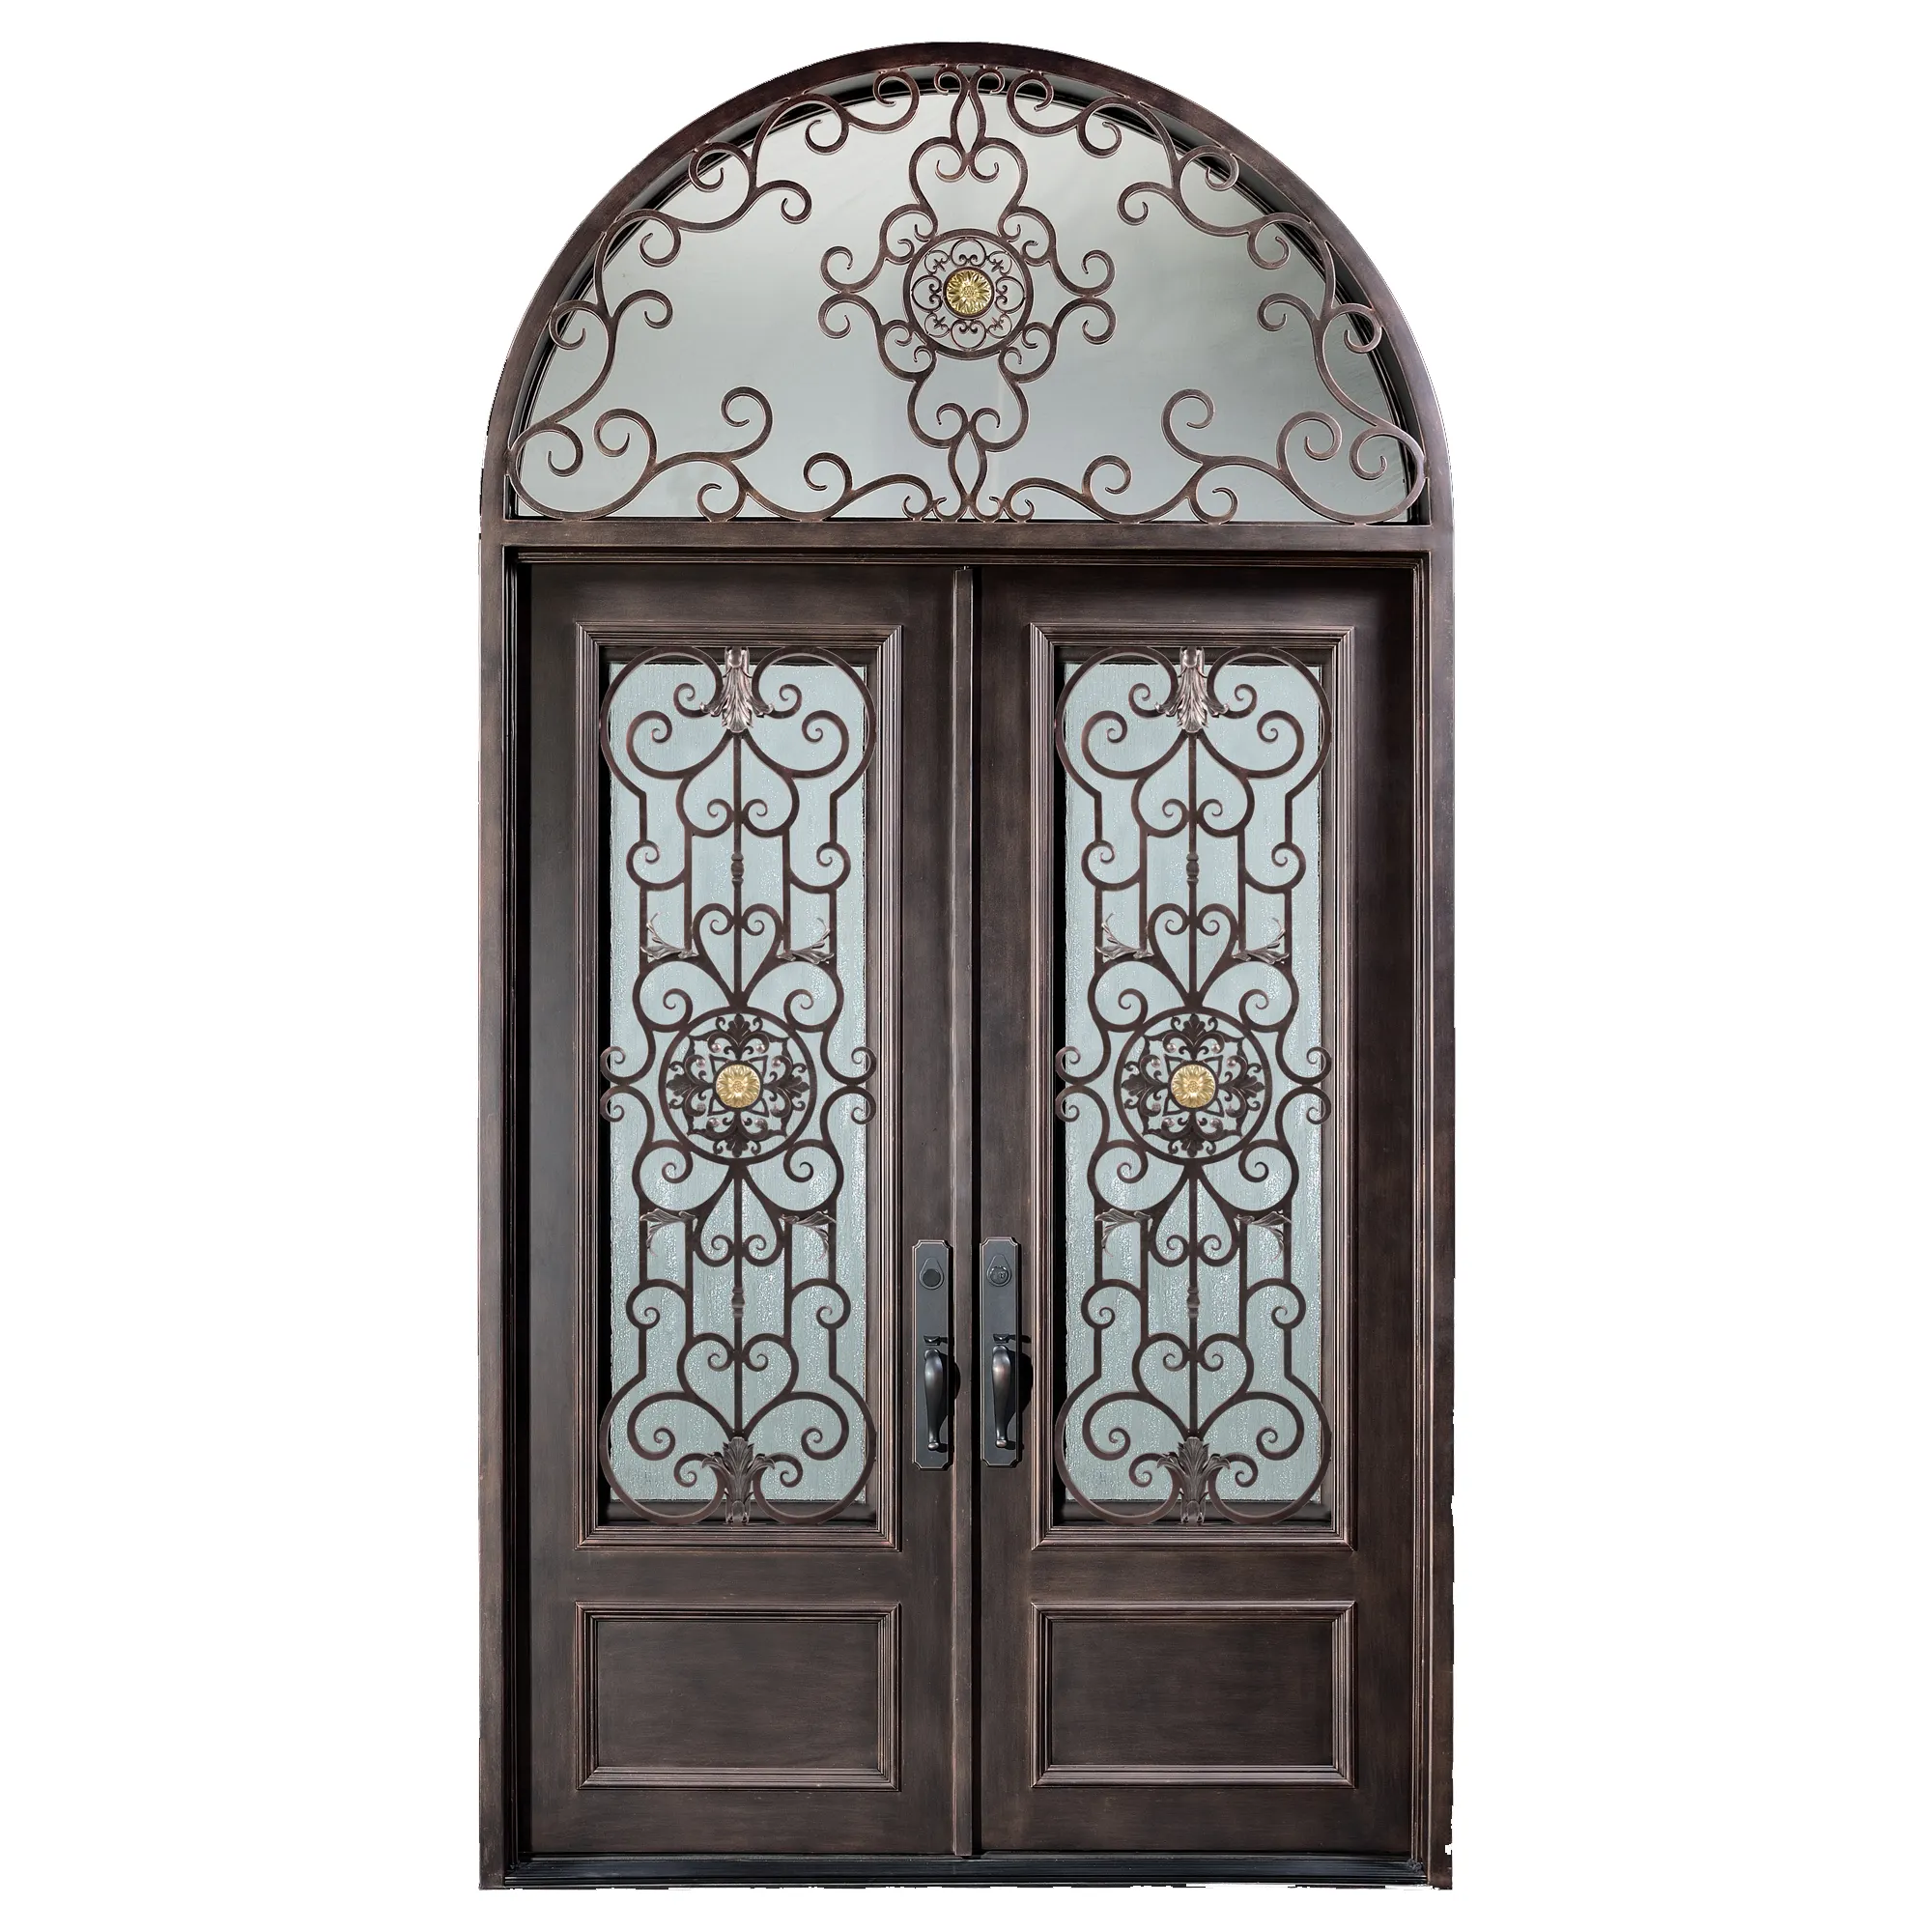 Hand-forged iron main door/wrought iron door glass